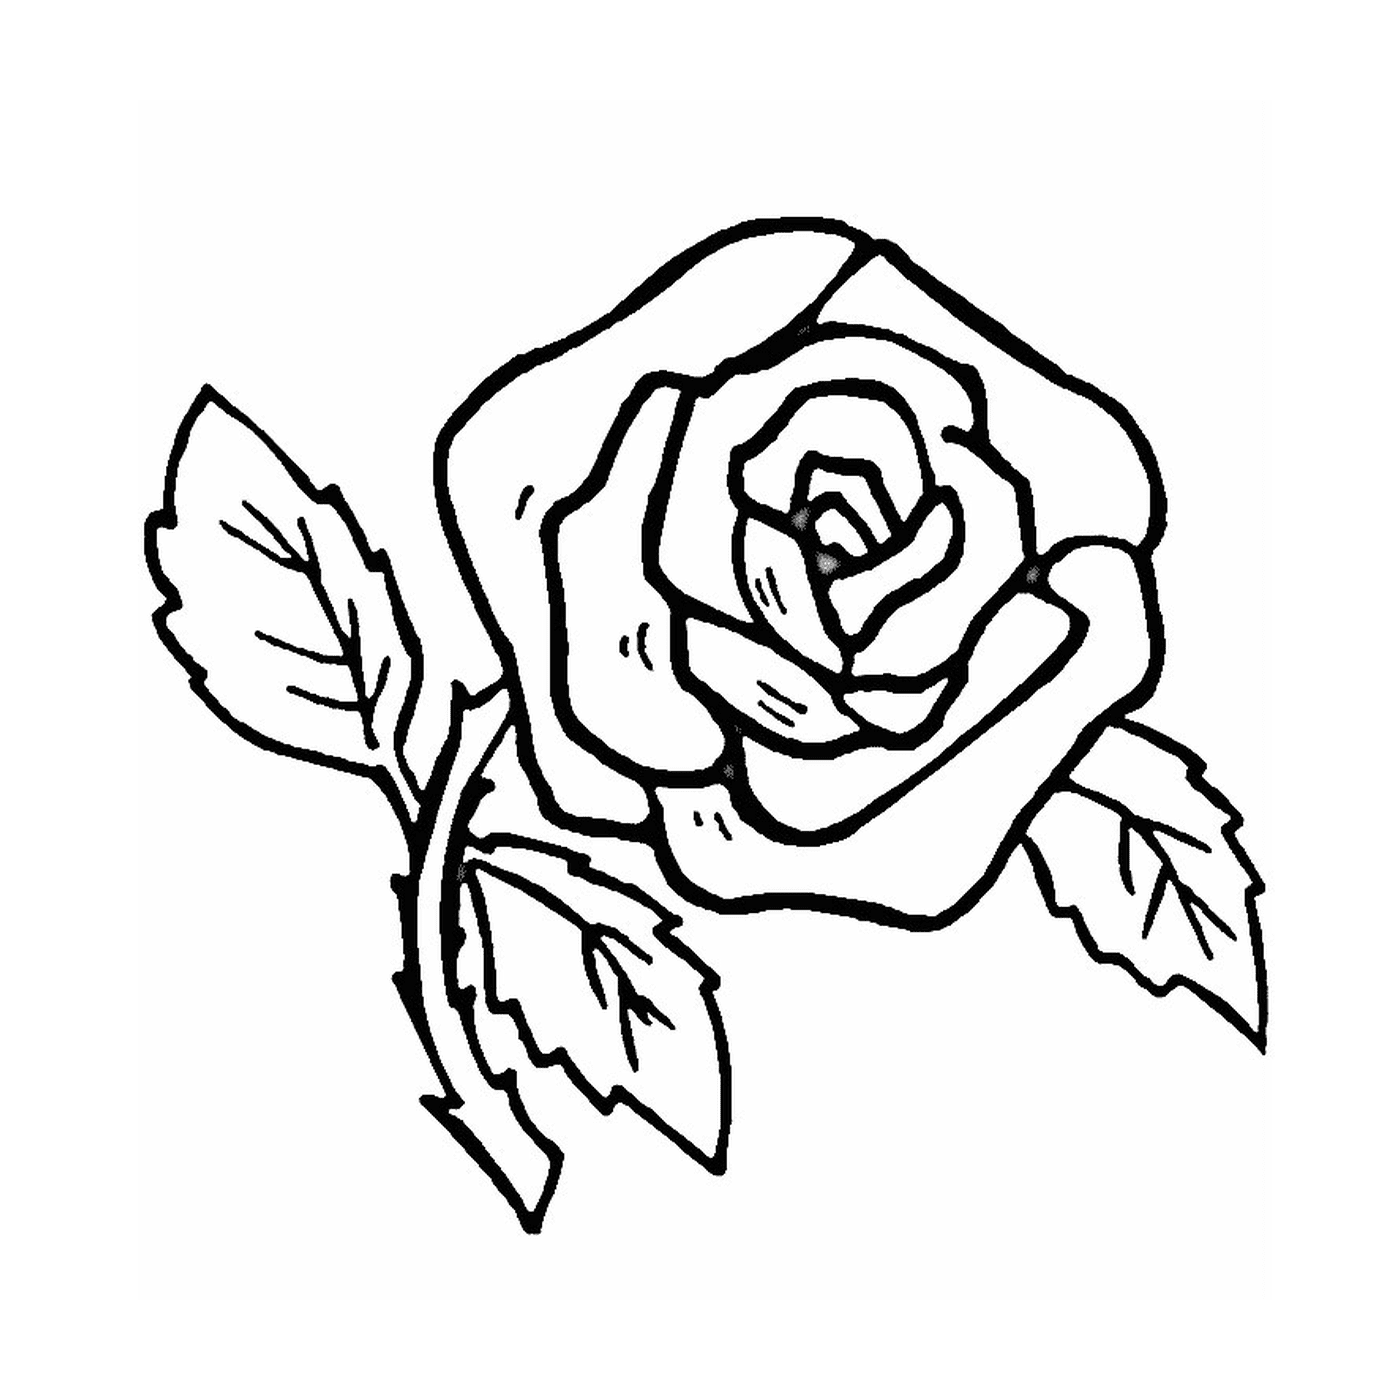  Uma rosa simples e fácil 